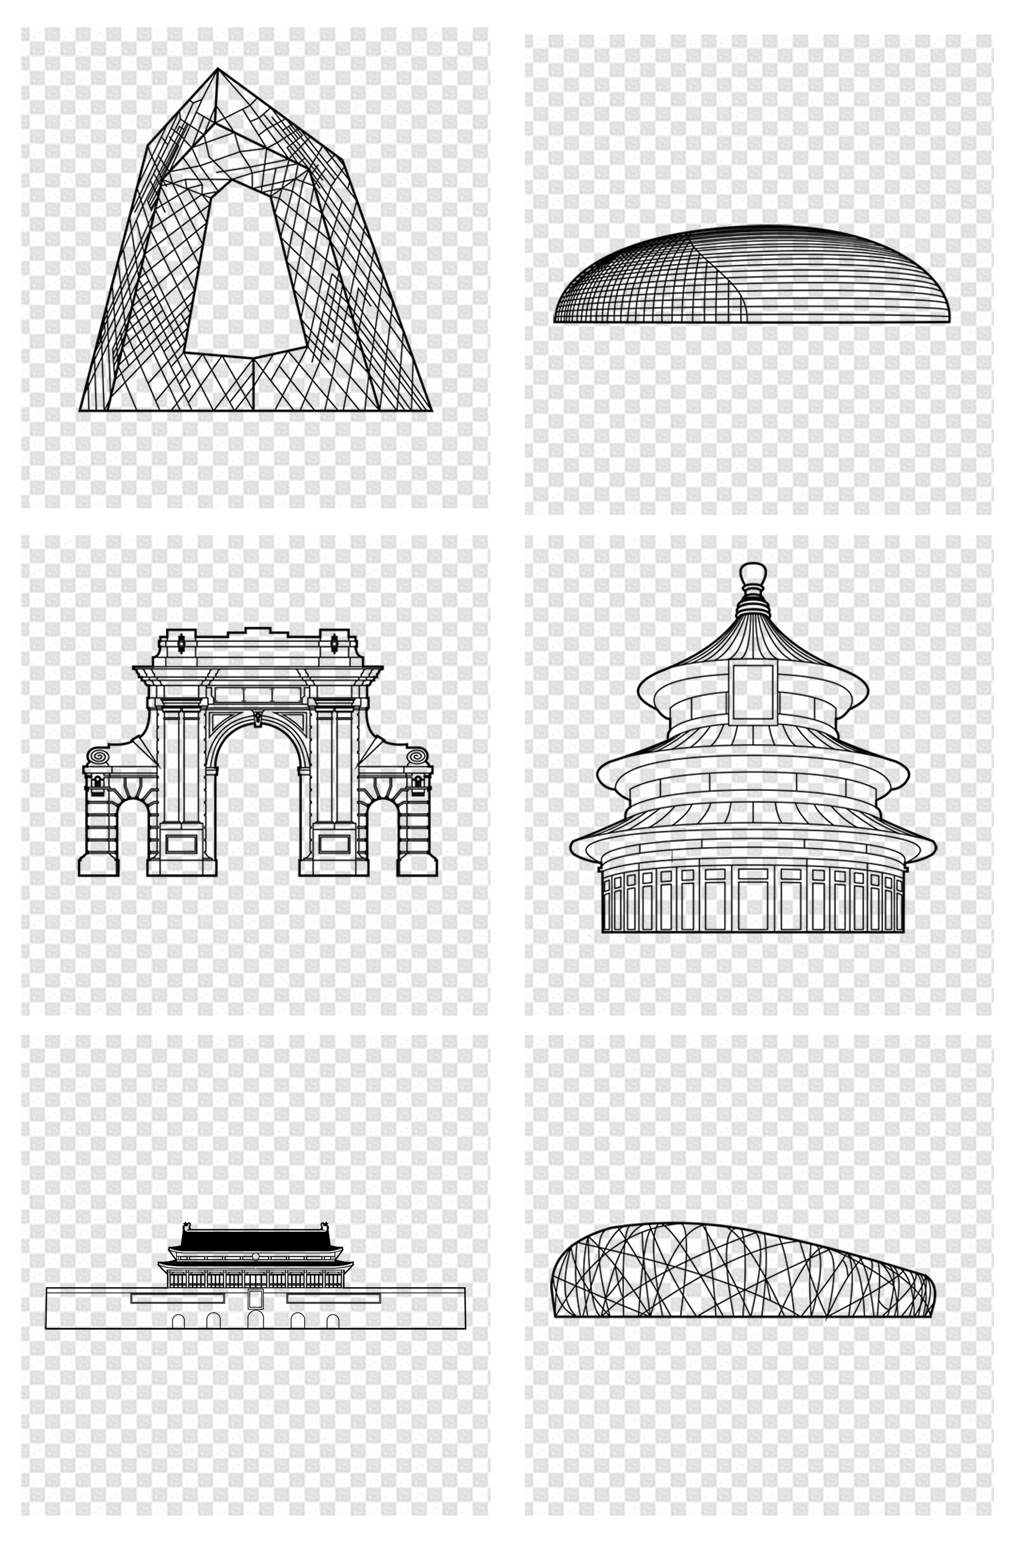 北京城市剪影简笔画图片